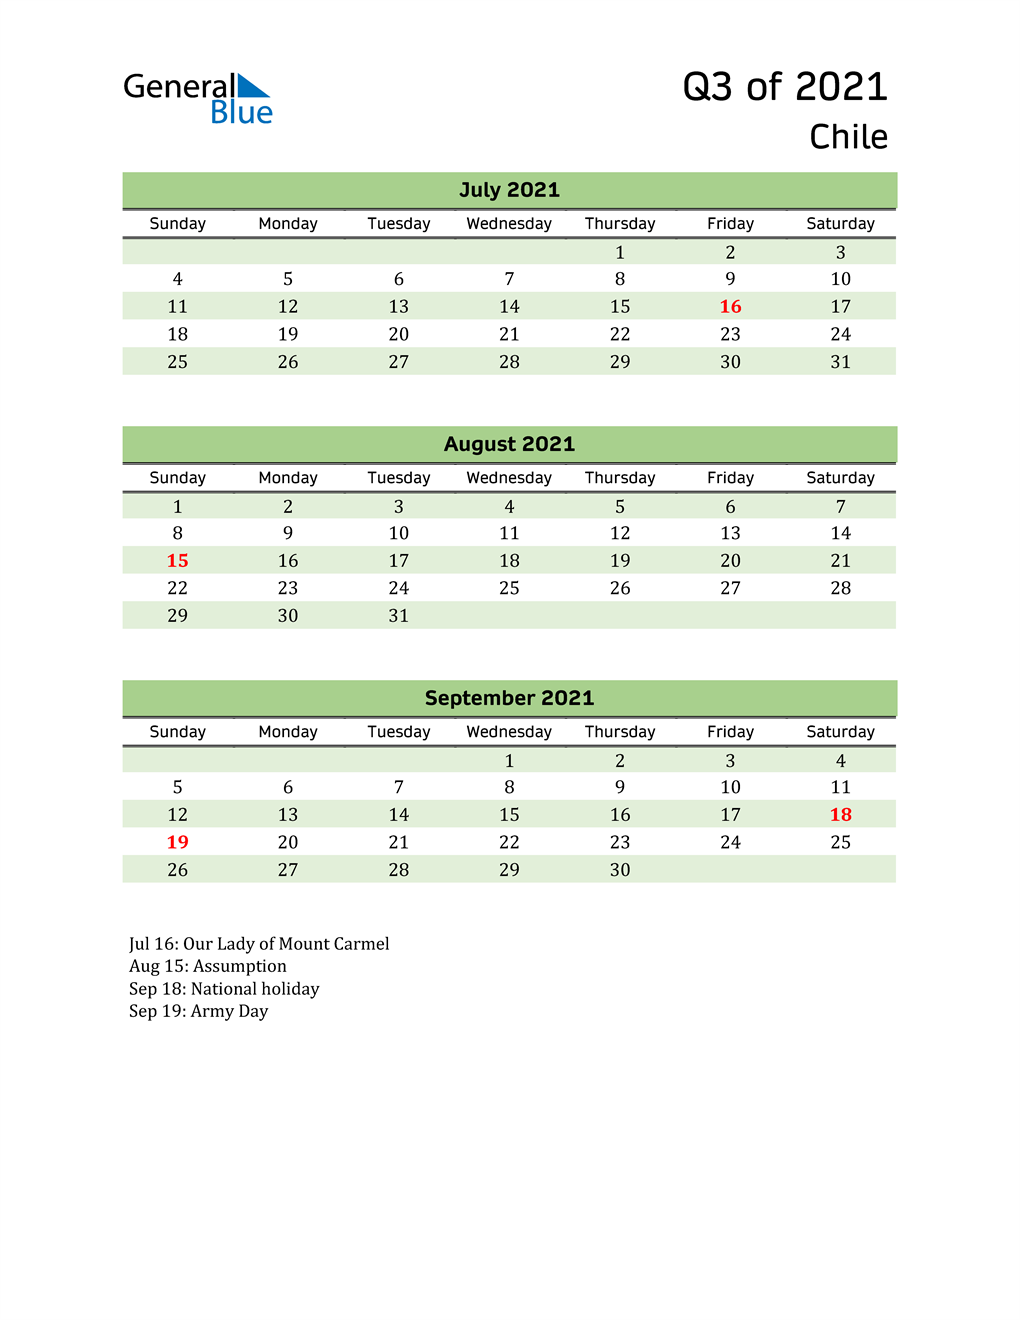  Quarterly Calendar 2021 with Chile Holidays 